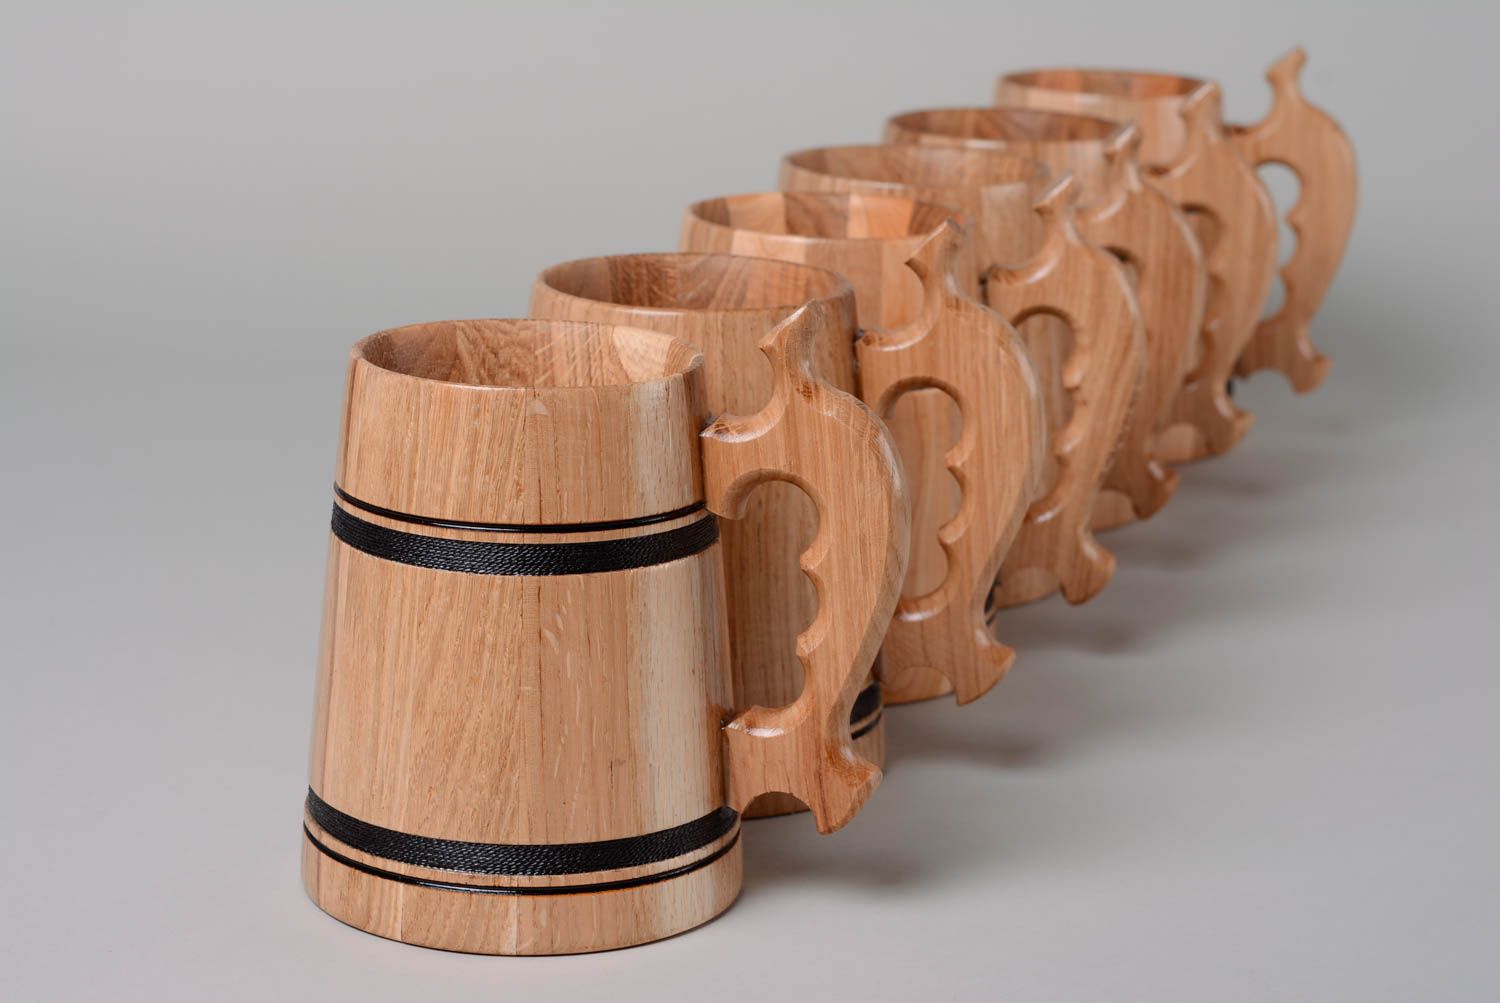 Set de 6 jarras de madera artesanales para decorar casa foto 2